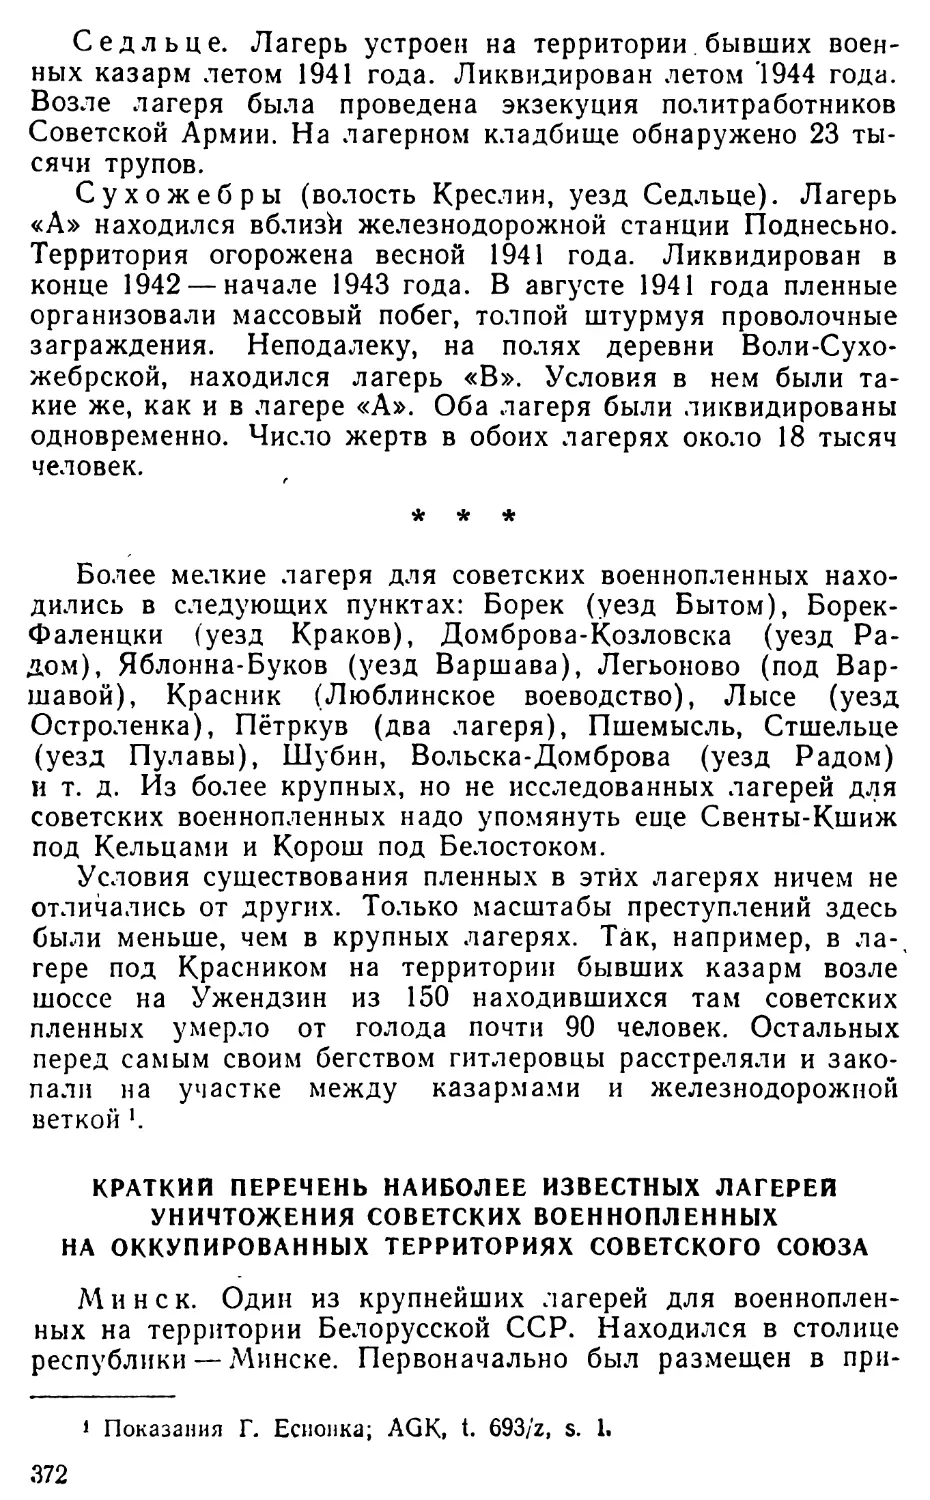 Краткий перечень наиболее известных лагерей уничтожения советских военнопленных на оккупированных территориях Советского Союза